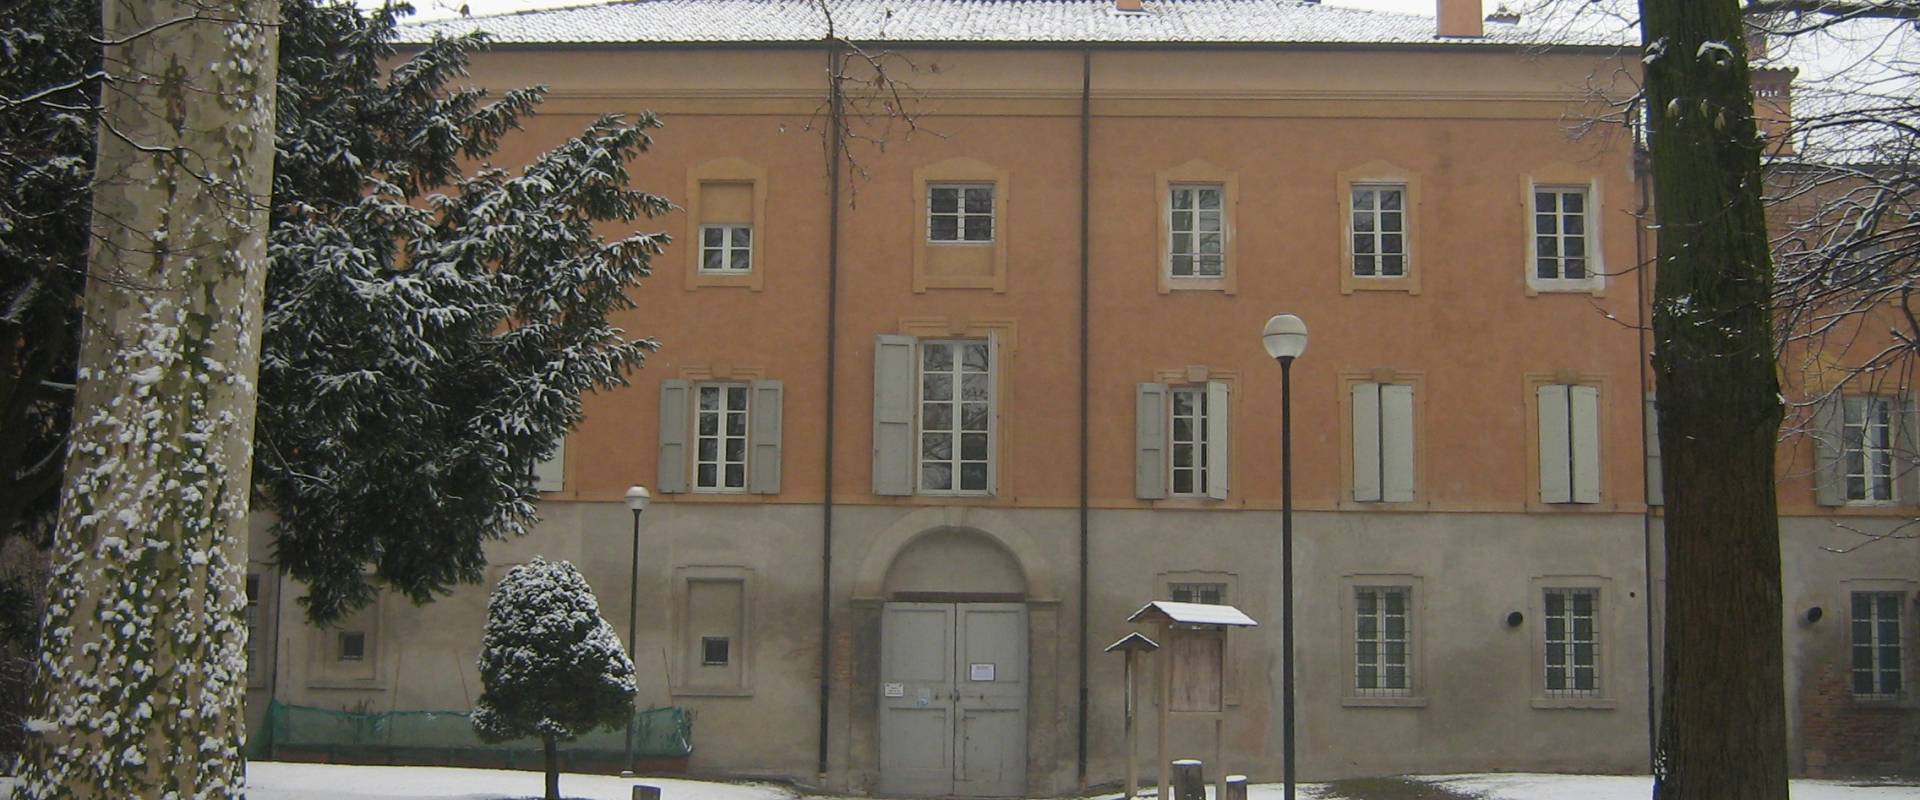 Palazzo Sartoretti e parco in inverno foto di Claudio Magnani